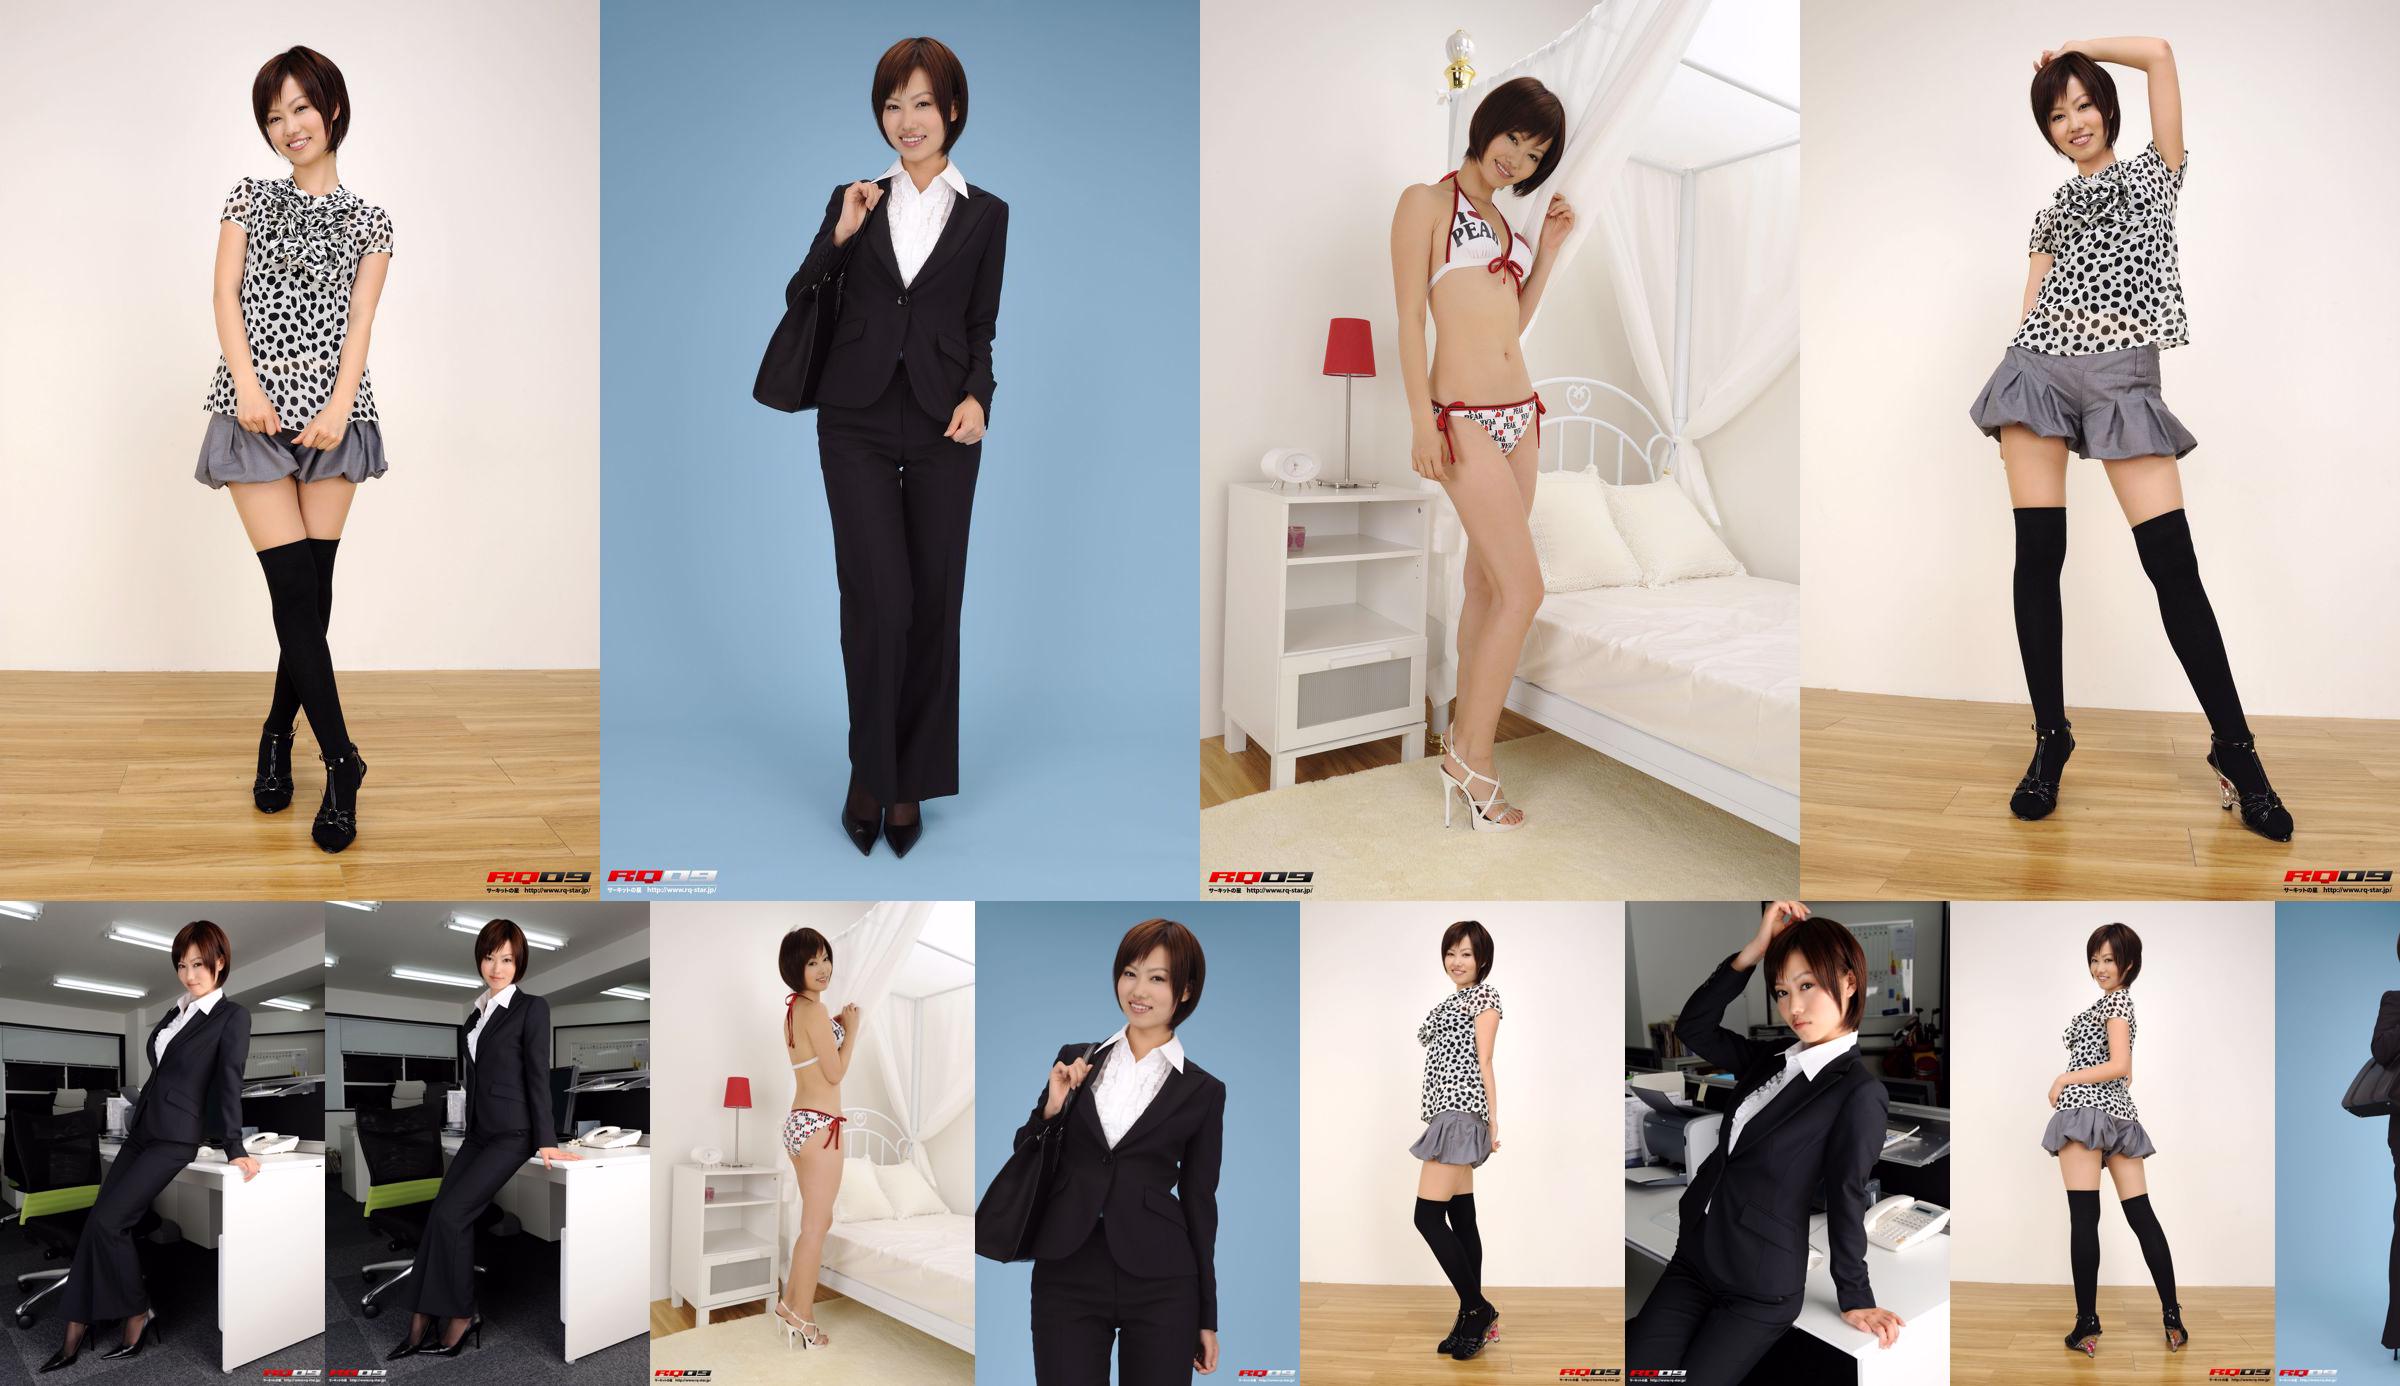 [RQ-STAR] NO.00155 Fujimura Misato / Fujimura Edison Recruit Style Office Beauty-Serie No.f25a9b Seite 3